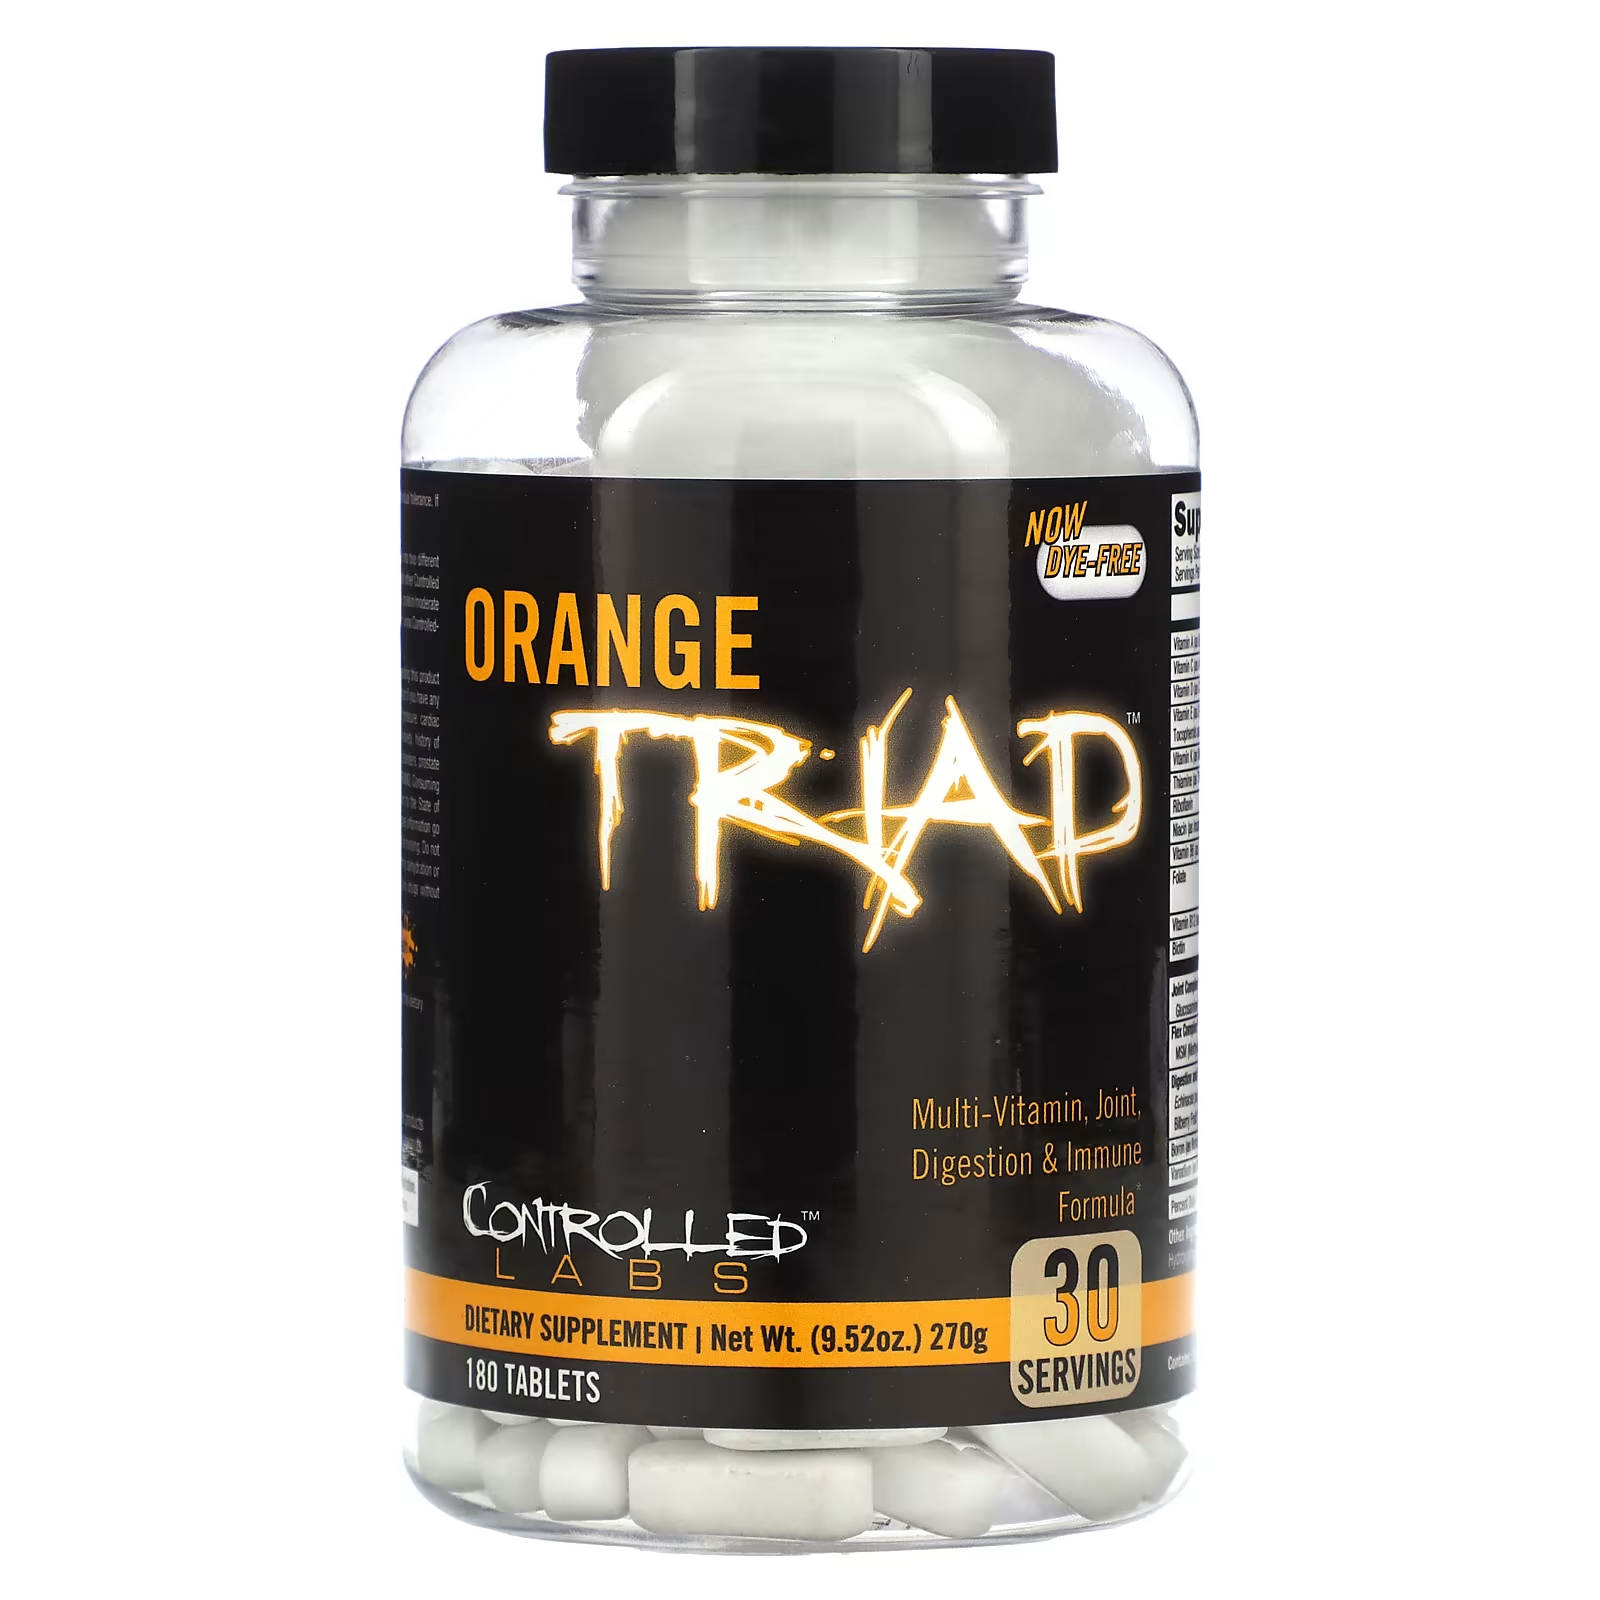 Мультивитаминная формула для пищеварения и иммунитета для суставов Controlled Labs Orange Triad, 180 таблеток controlled labs апельсиновая триада 180 таблеток